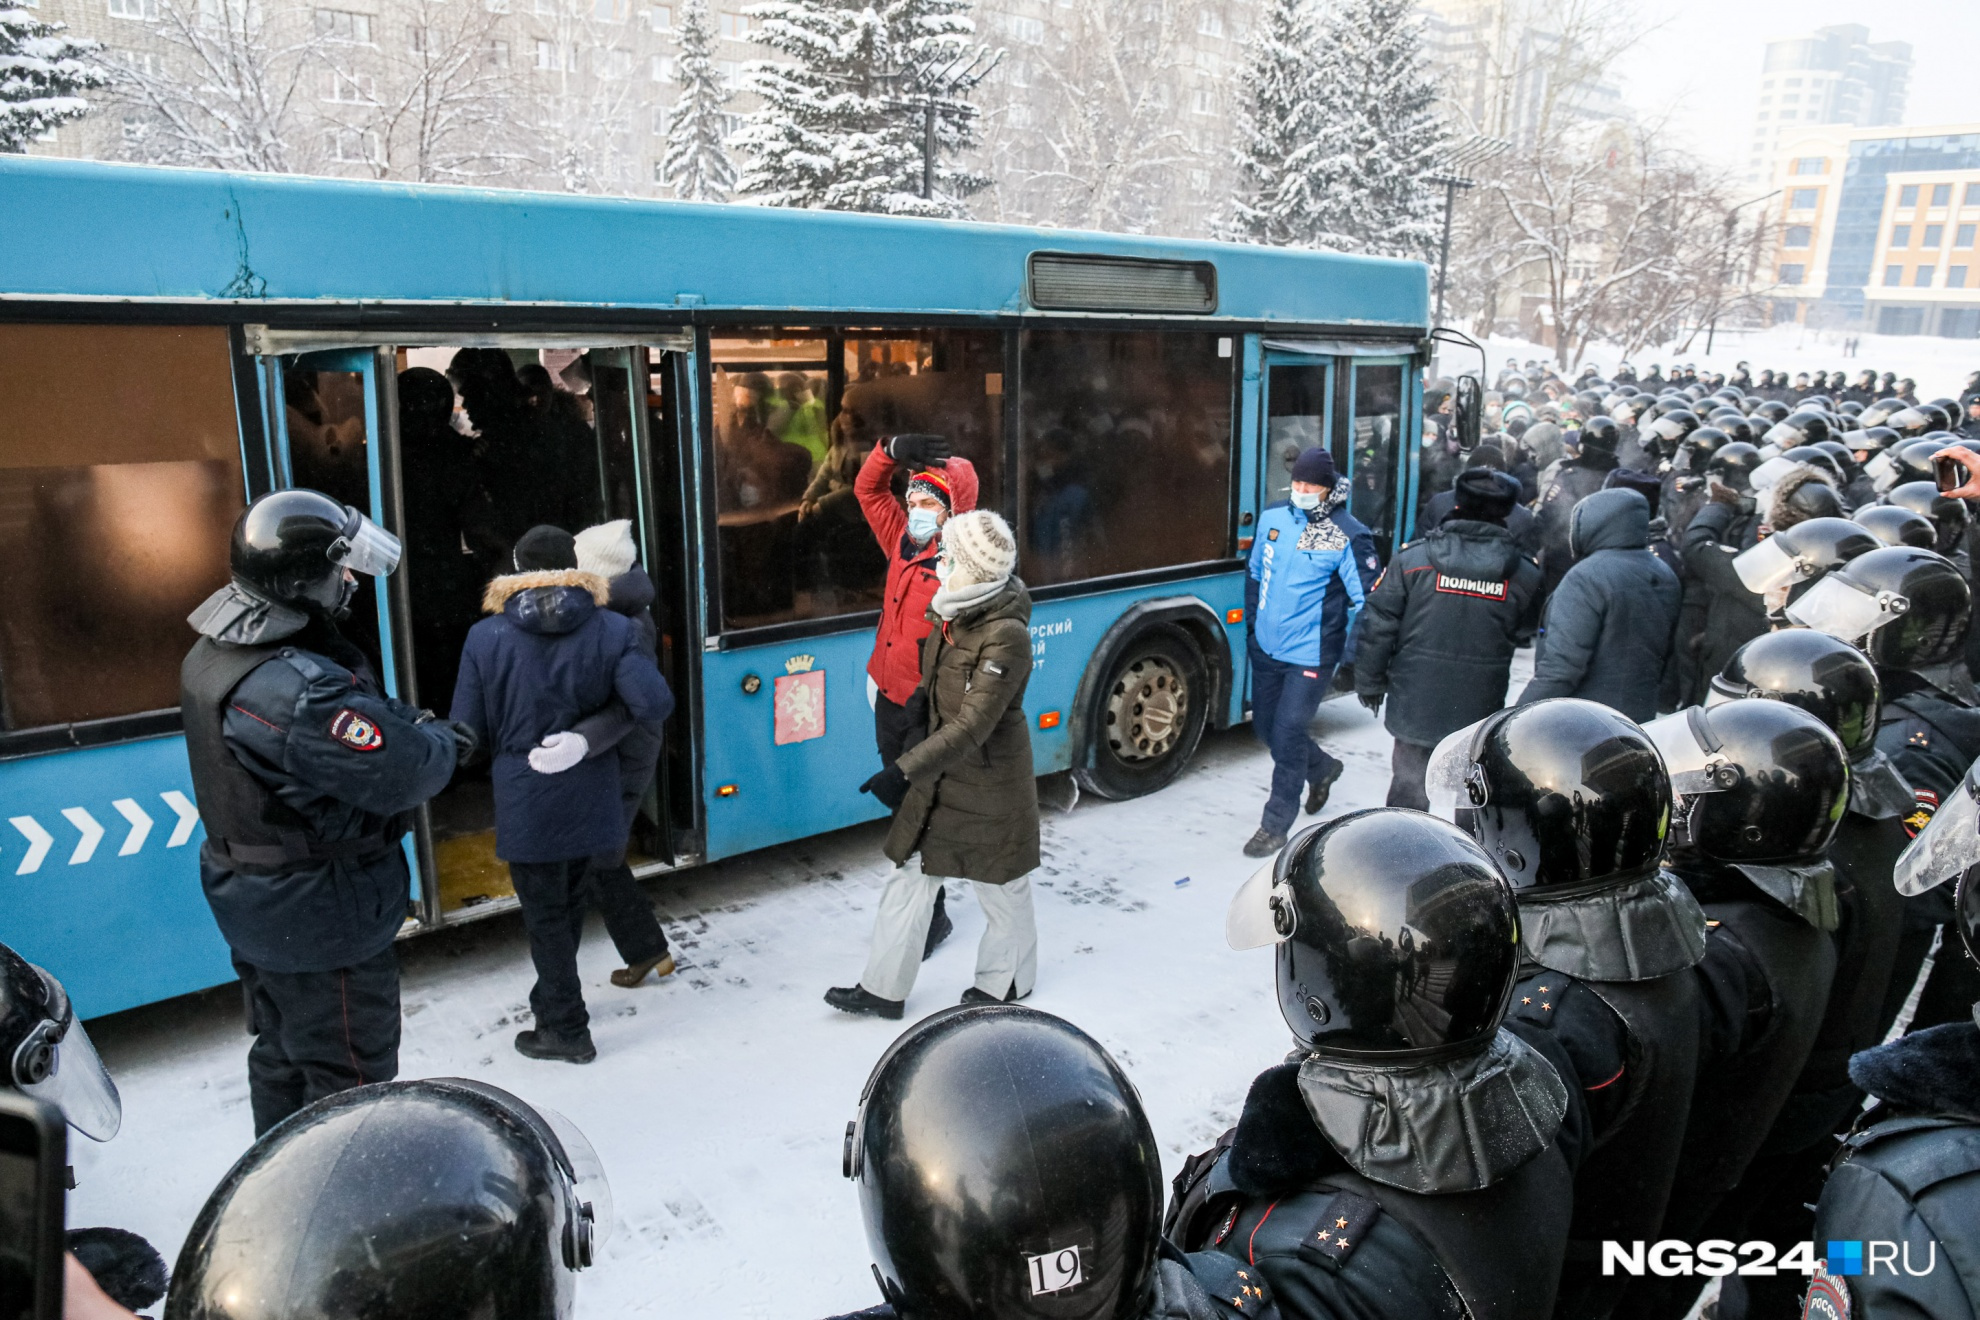 Всех митингующих посадили в автобусы и развезли по разным отделениям полиции для оформления протоколов